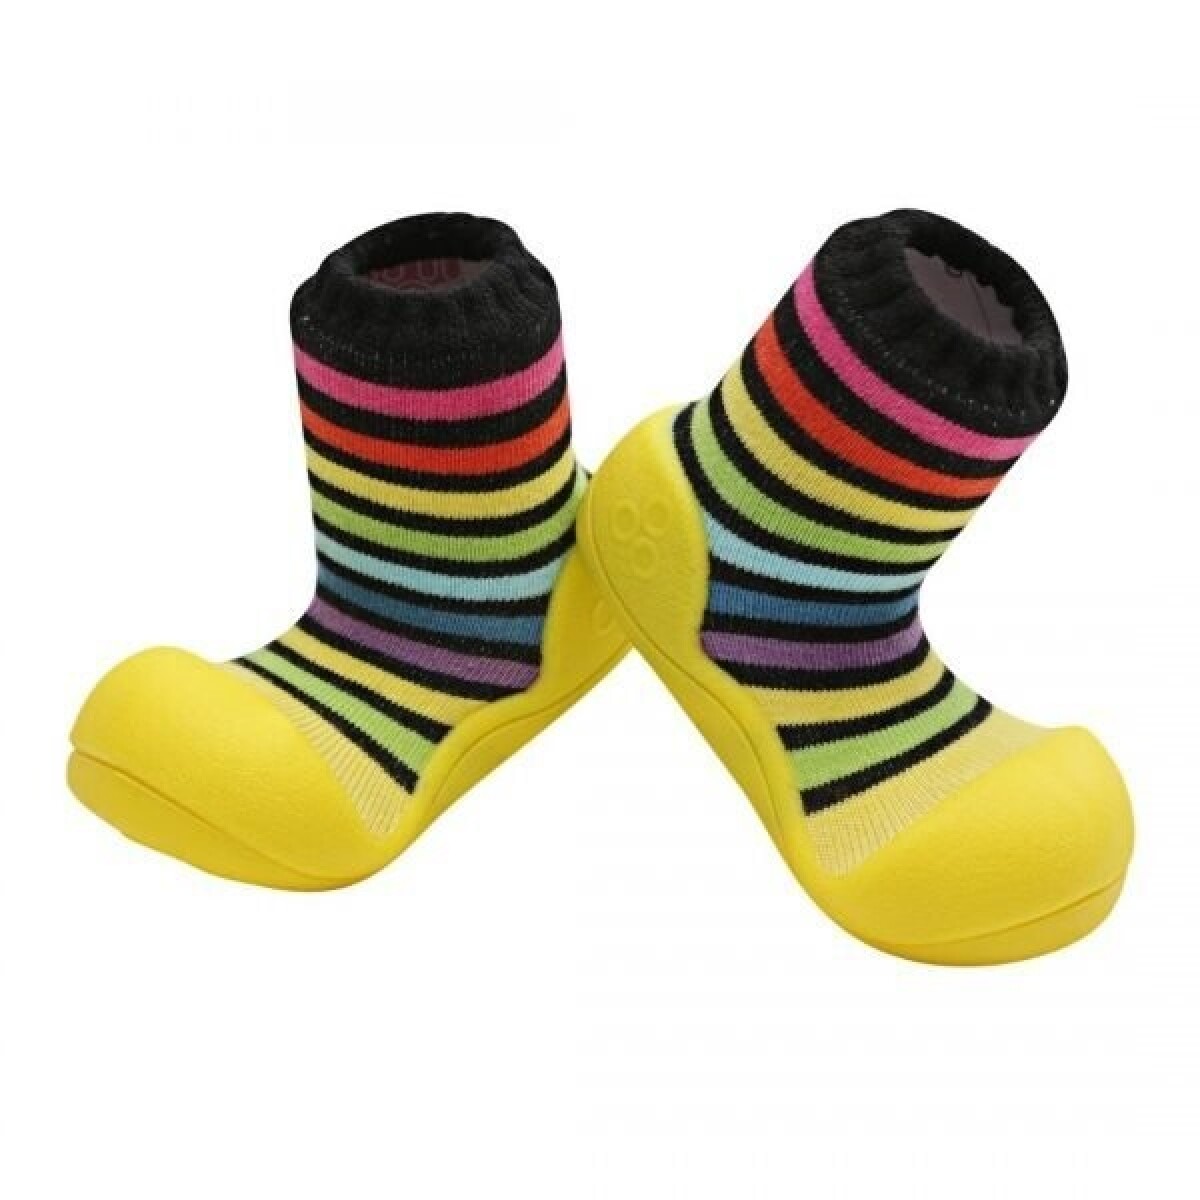 Calzado Ergonómico Attipas Rainbow Yellow - AMARILLO 